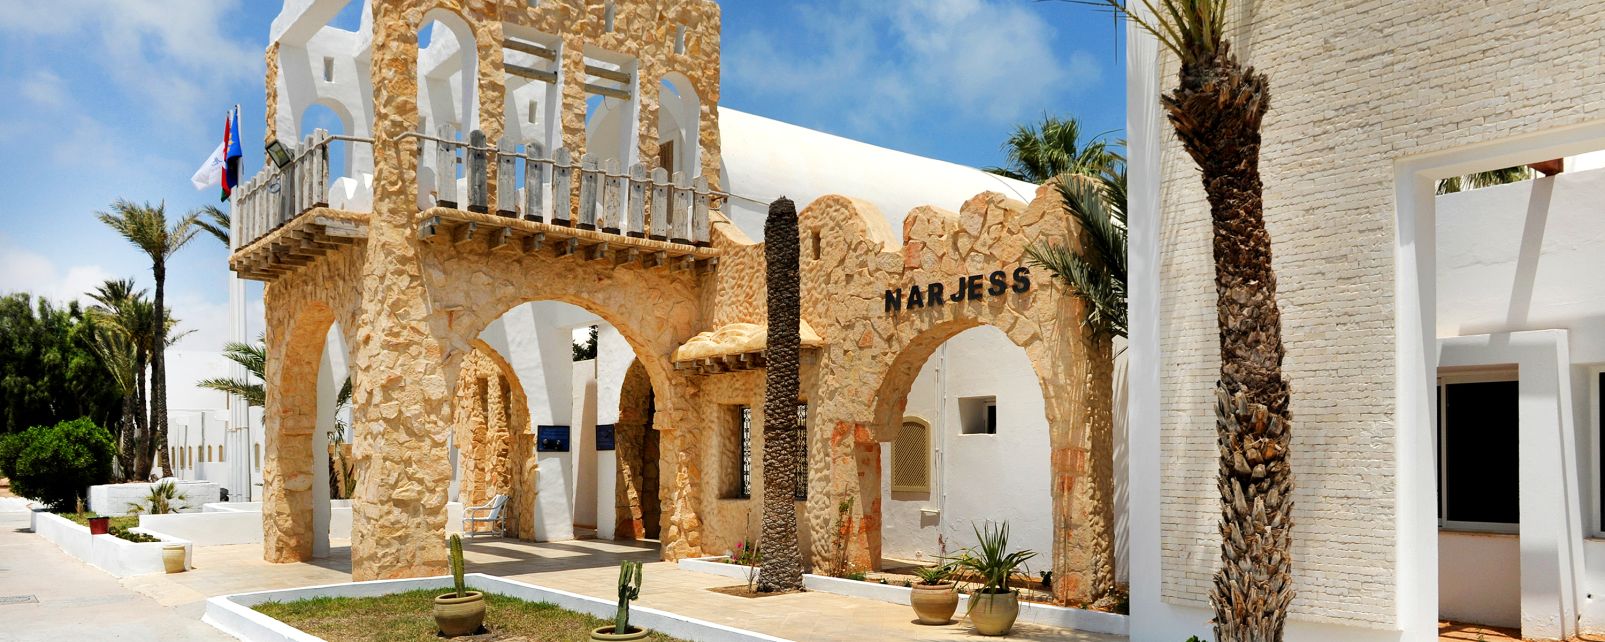 Hotel Narjess - Dar Djerba